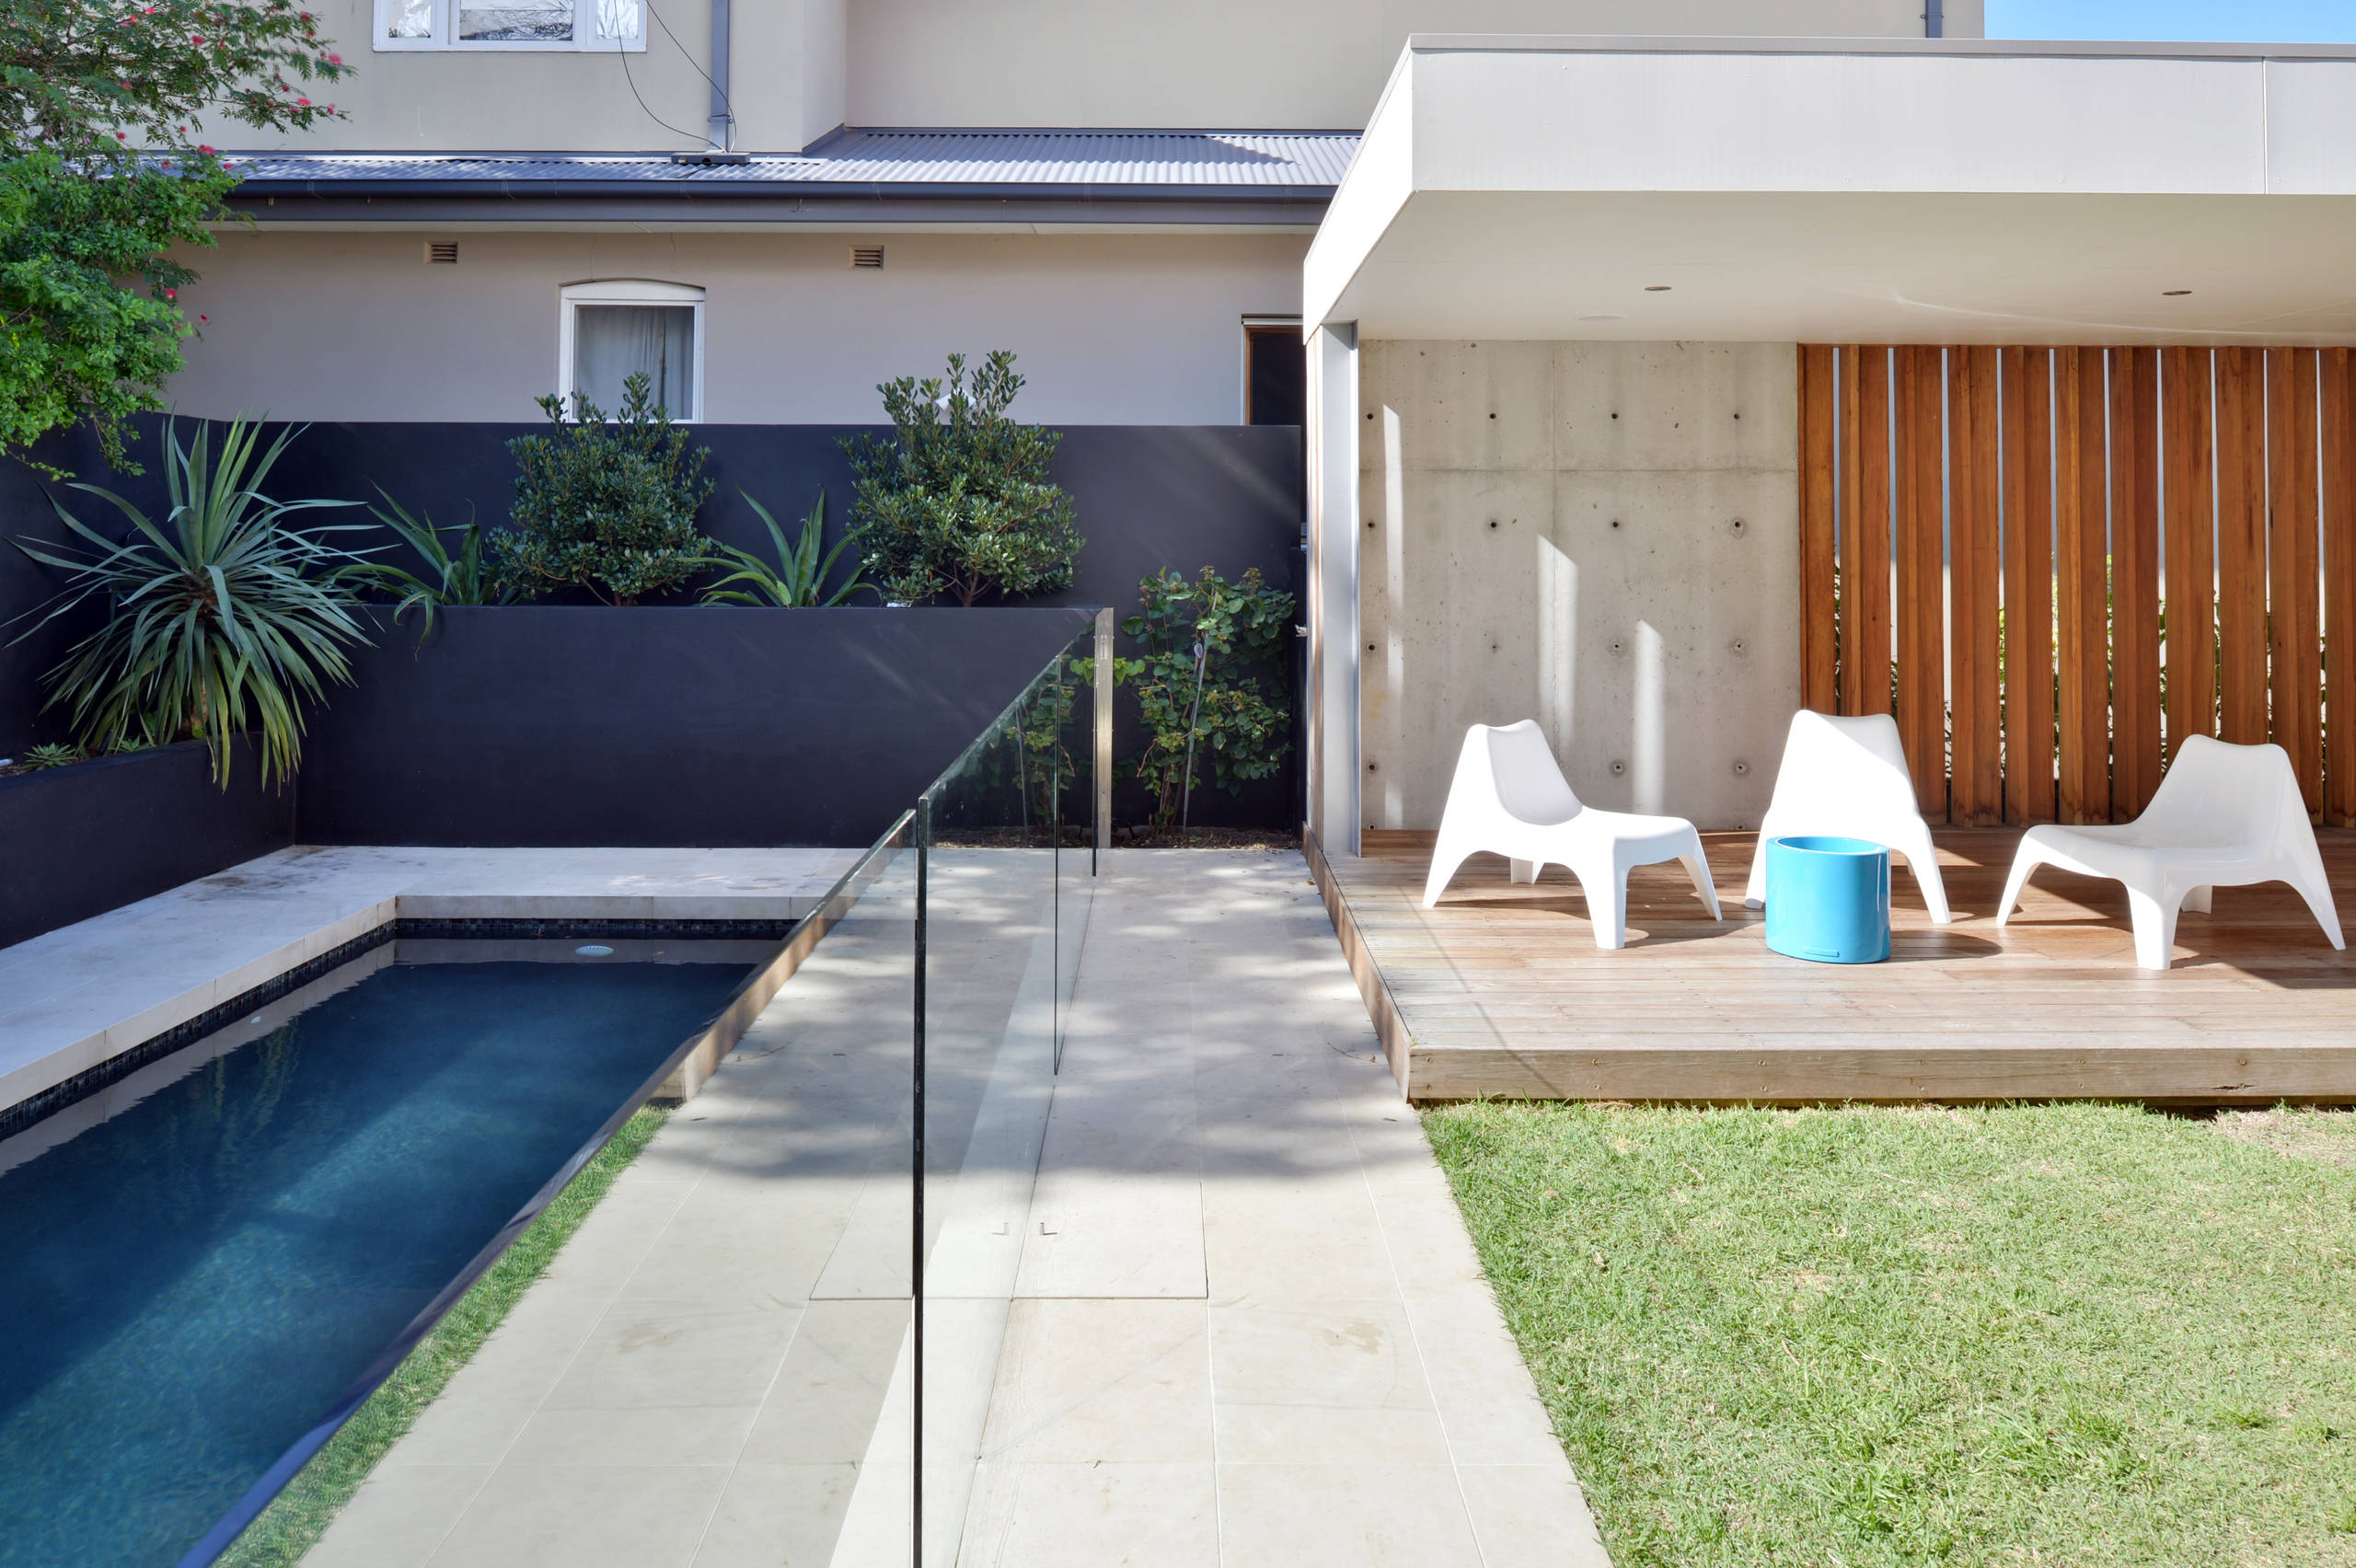 Дизайн бассейна (64 фото): интерьер вокруг него в частном доме и оформление на даче во дворе. СПА-бассейн на дачном участке и внутри дома - лучшие идеи для оформления